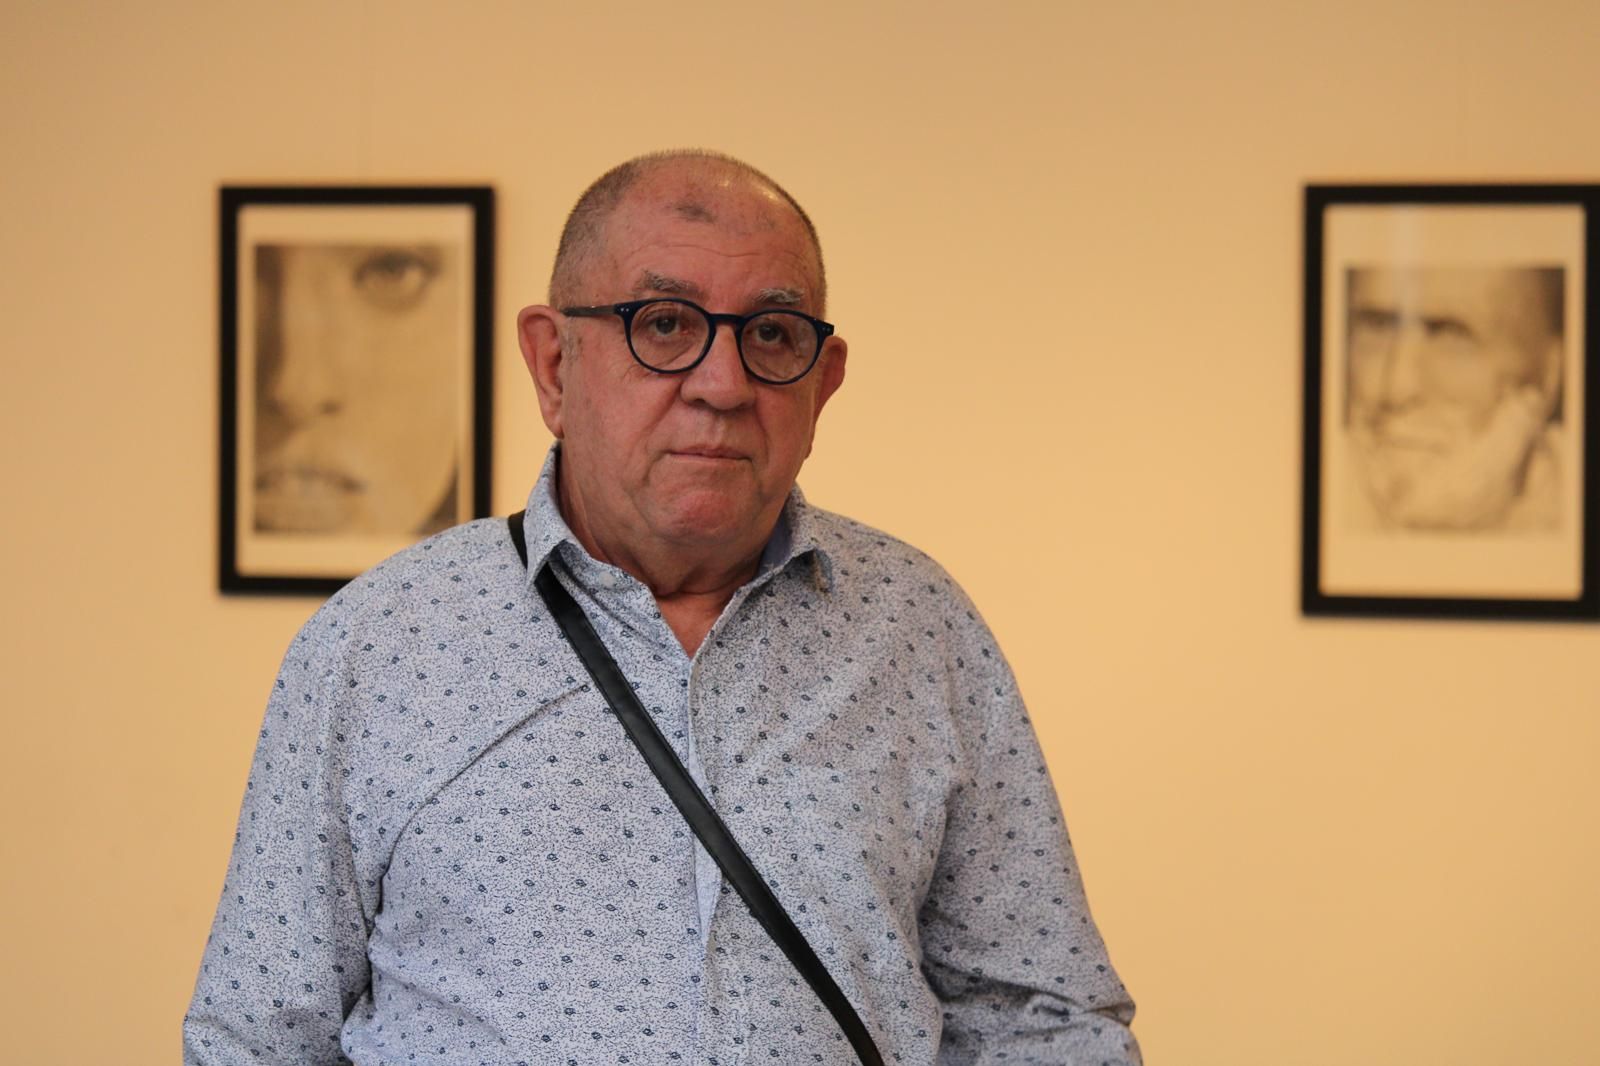 Exposición de retratos en la Casa de Cultura de El Campello